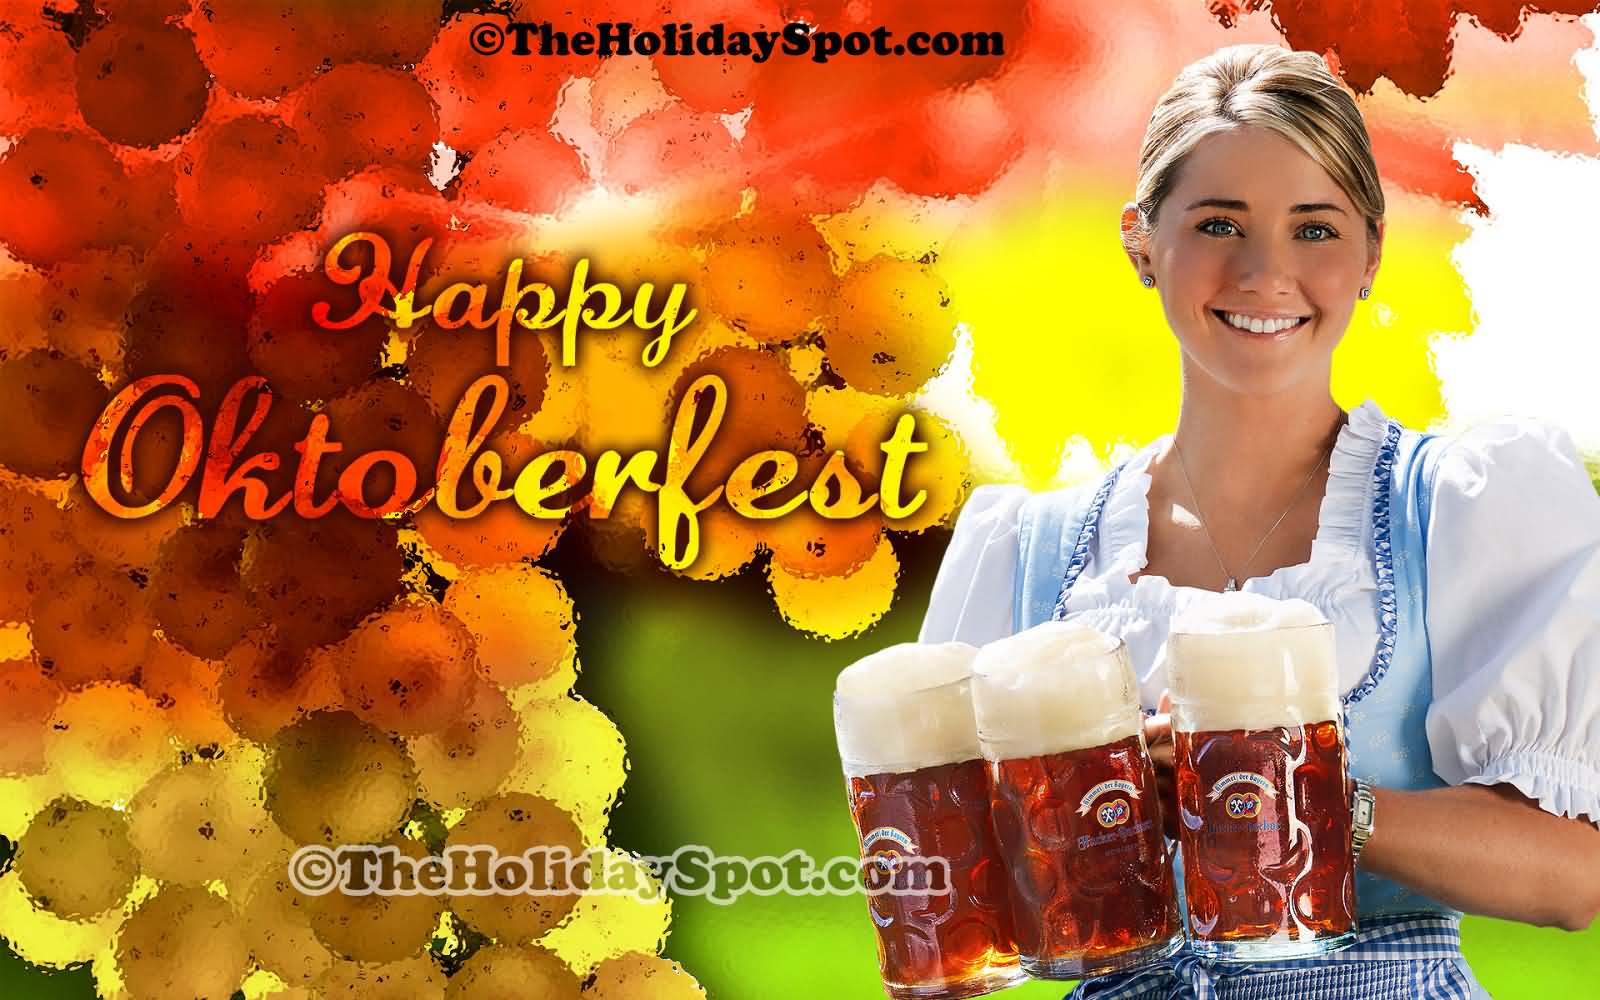 Girl With Beer Mugs Wishing You Happy Oktoberfest